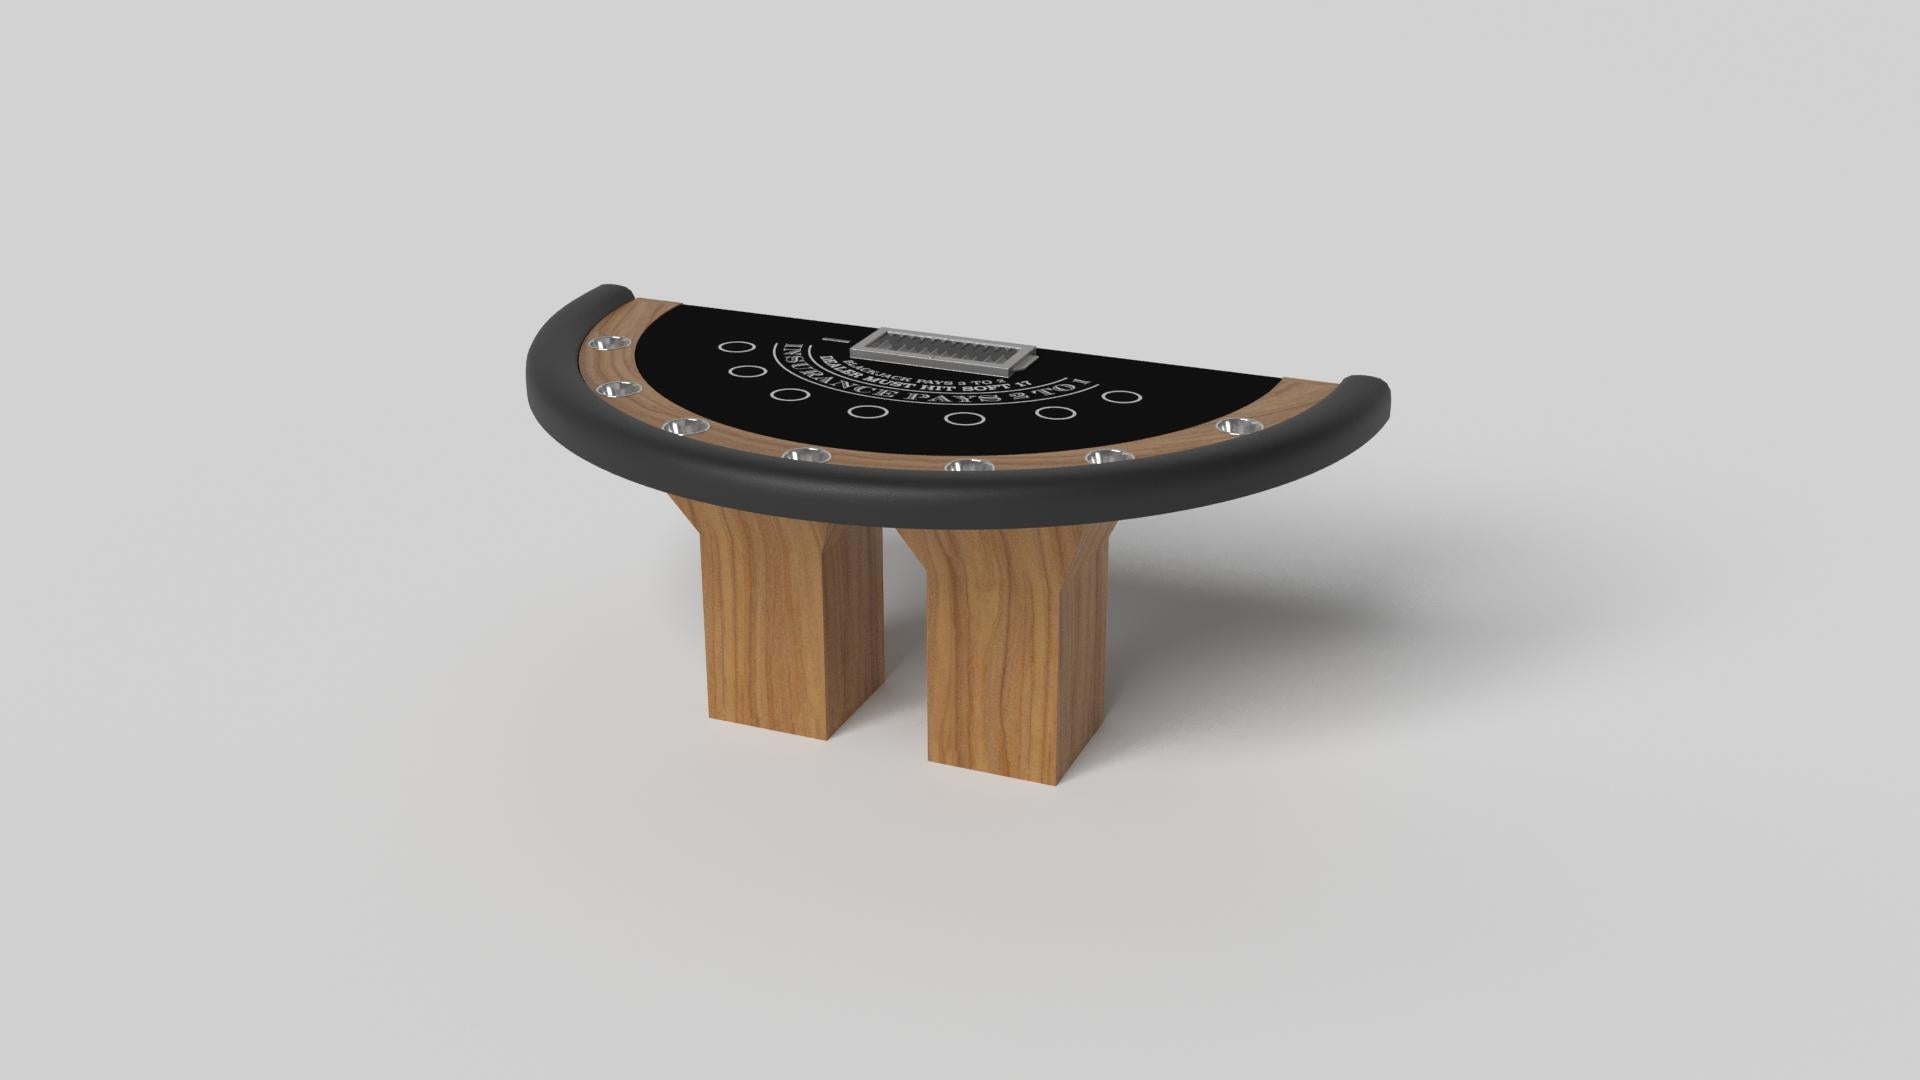 Minimalistisches Design trifft beim Trestle Blackjack-Tisch auf opulente Eleganz. Dieser moderne Tisch ist mit einer professionellen Oberfläche für endloses Spiel ausgestattet und wurde fachmännisch hergestellt. Die quadratischen Blockbeine